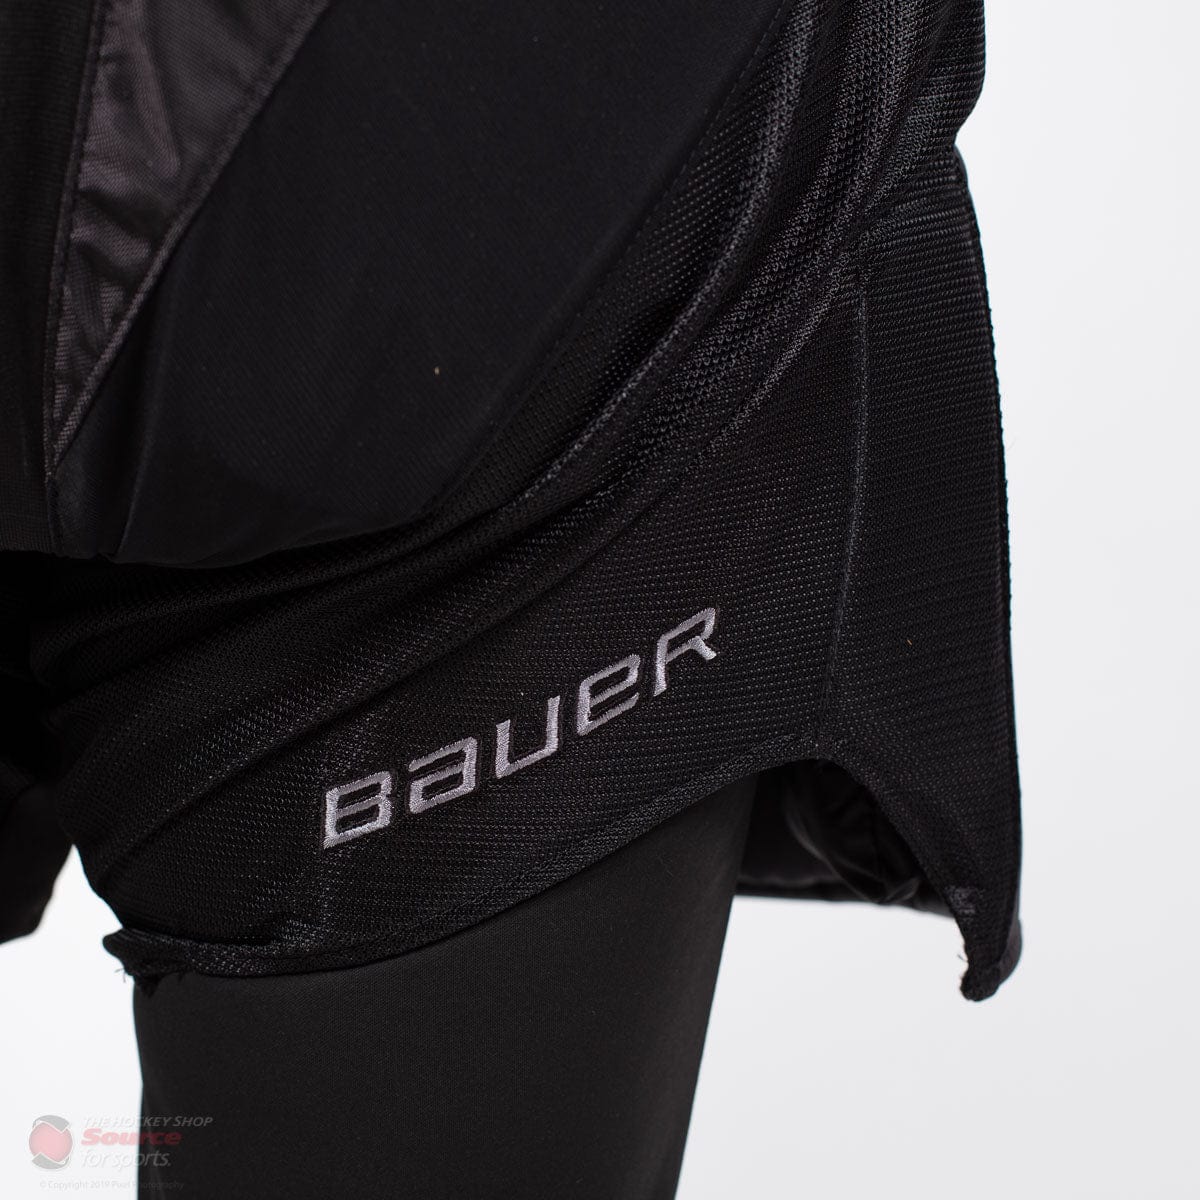 Bauer Vapor 2X Pro Senior Goalie Pants